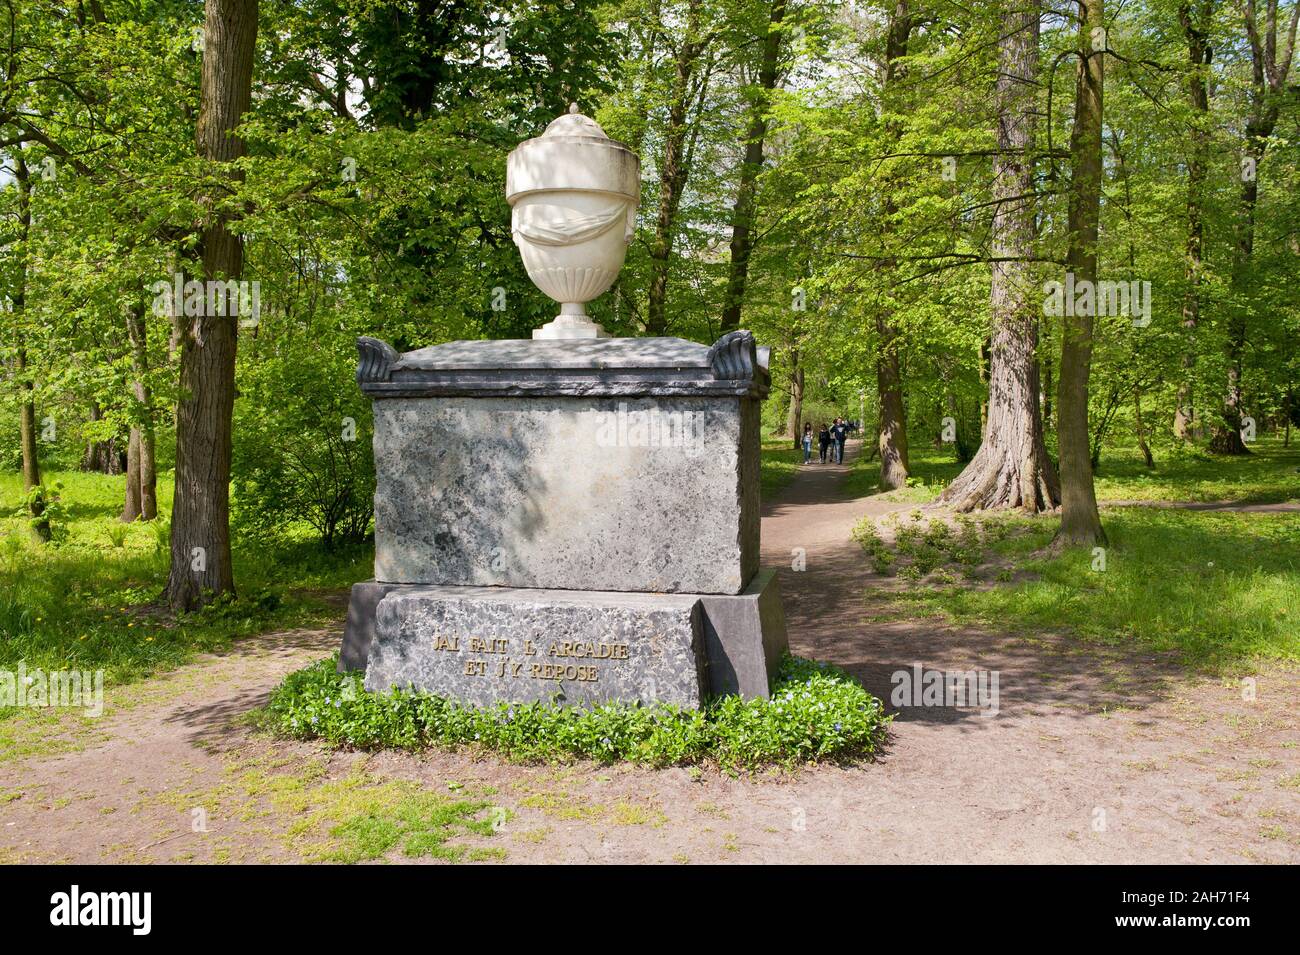 Helena Radziwiłłowa tomb on Poplar Island back view in Arkadia Park near Nieborów, Poland, Europe, spring season, sunny day. Stock Photo